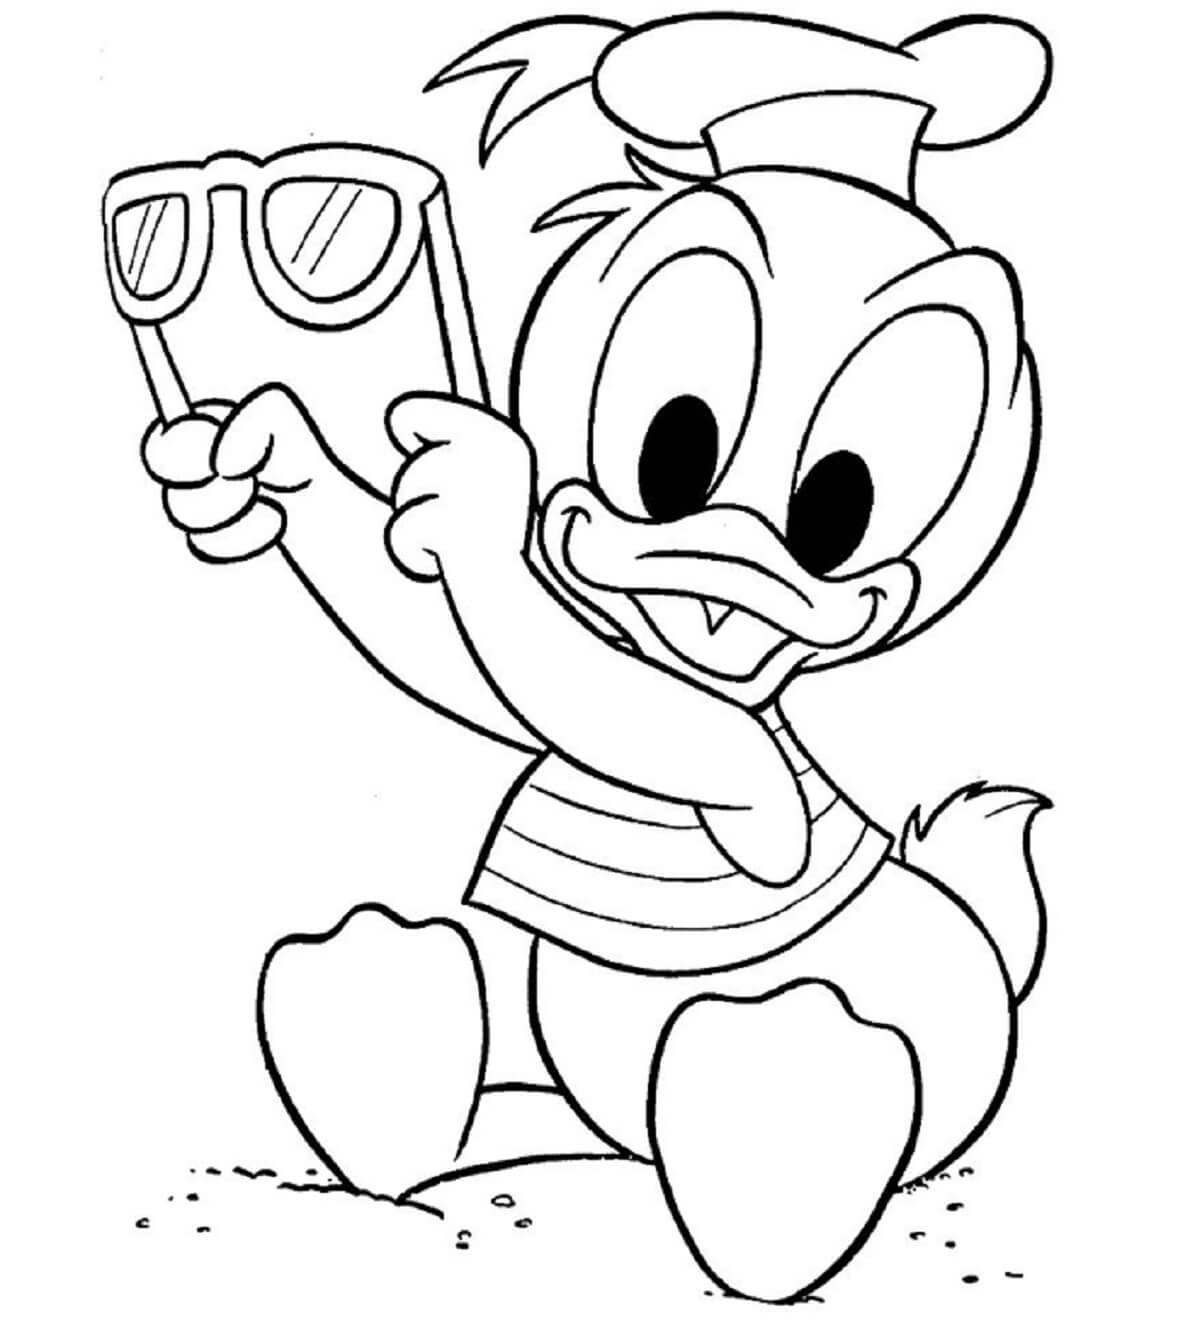 Bébé Donald coloring page